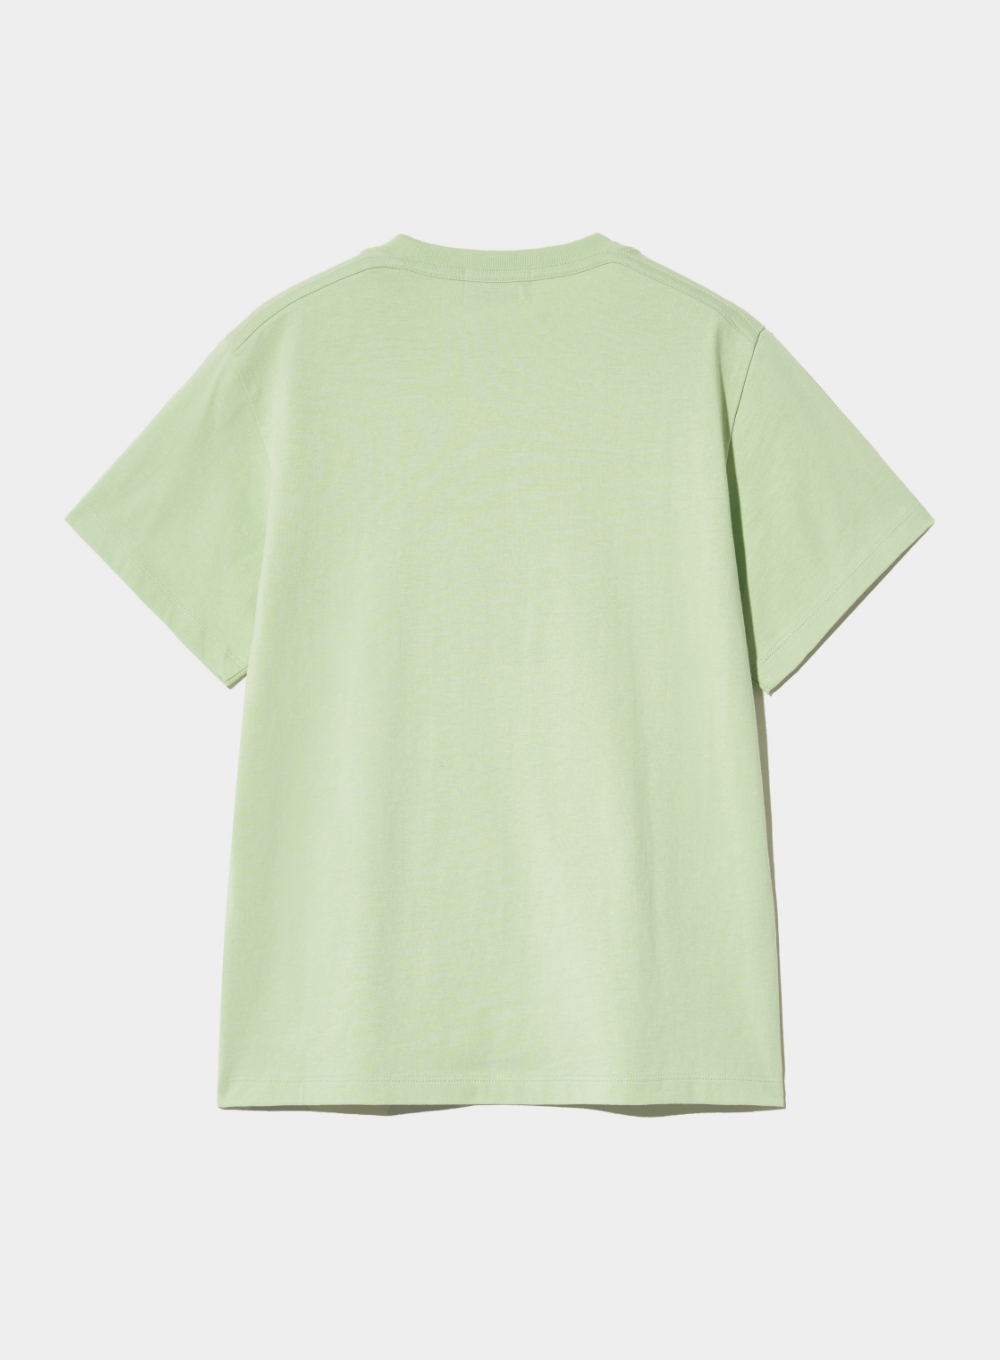 [5,000원 쿠폰] (W) Banana Tree Graphic T-Shirt - Celadon Mint